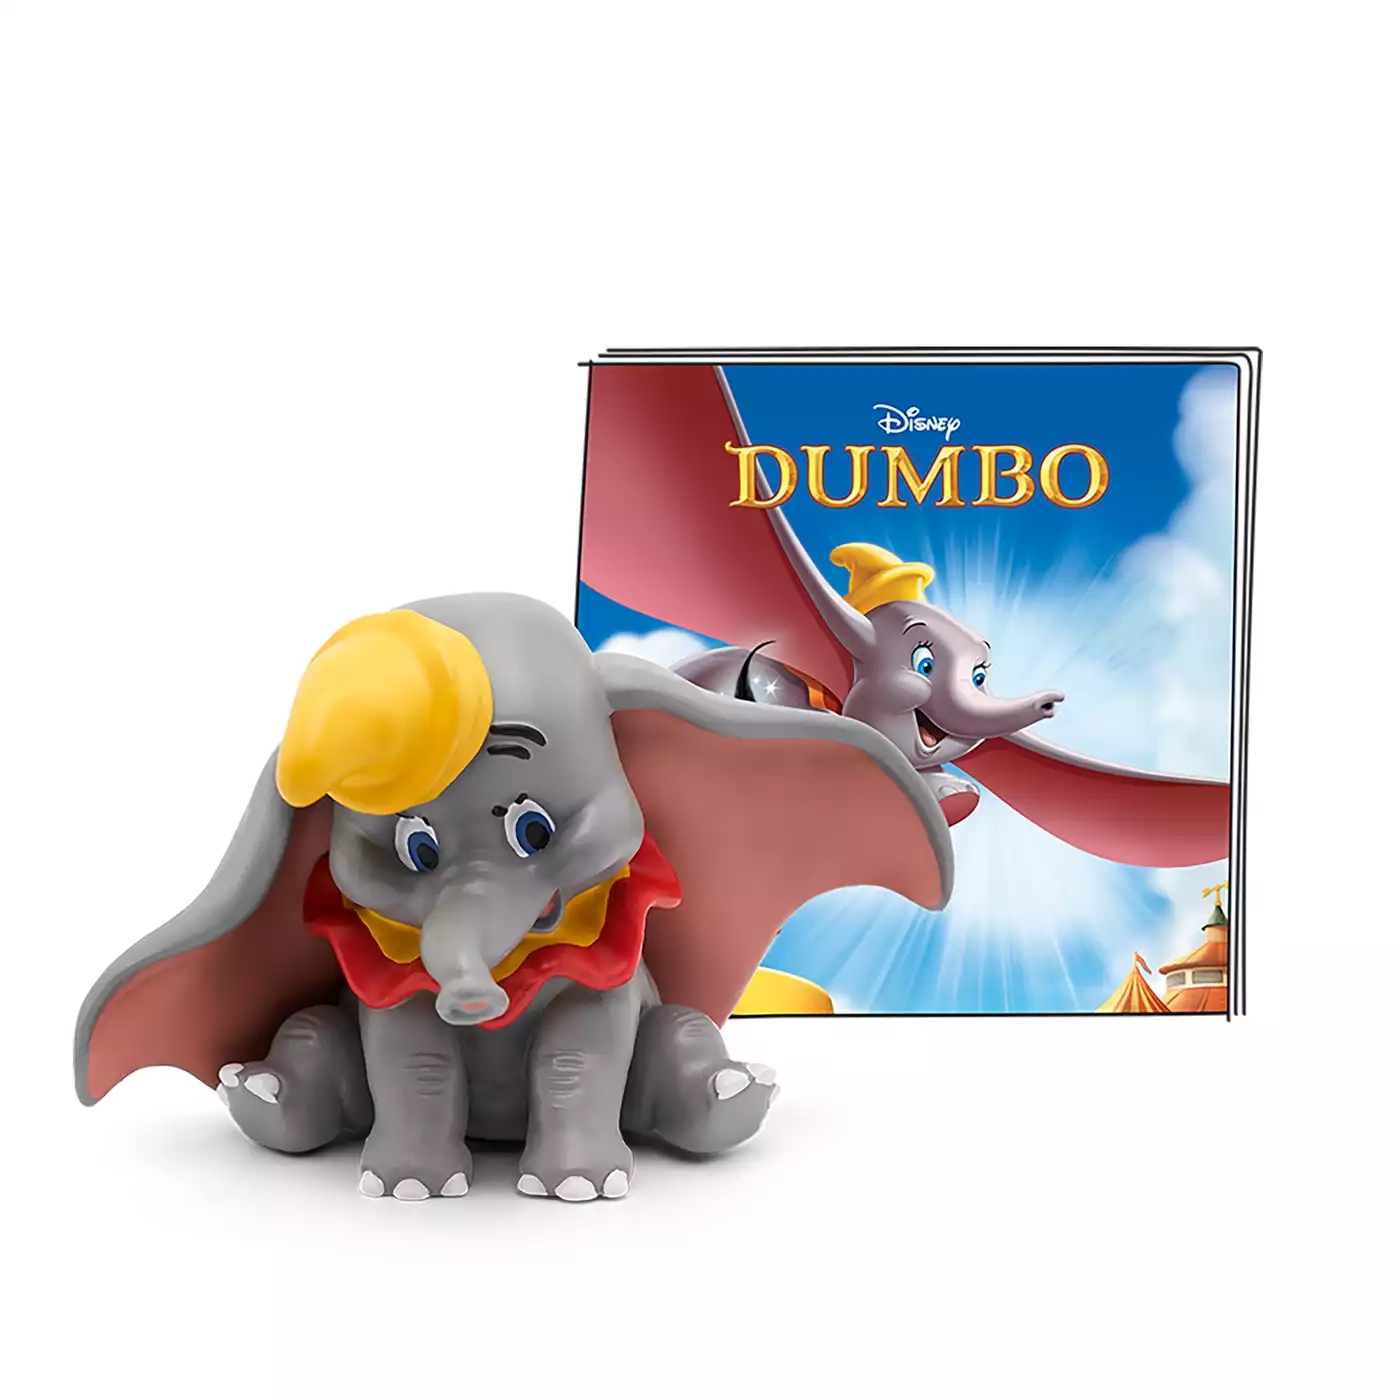 Disney - Dumbo tonies 2000577942602 1